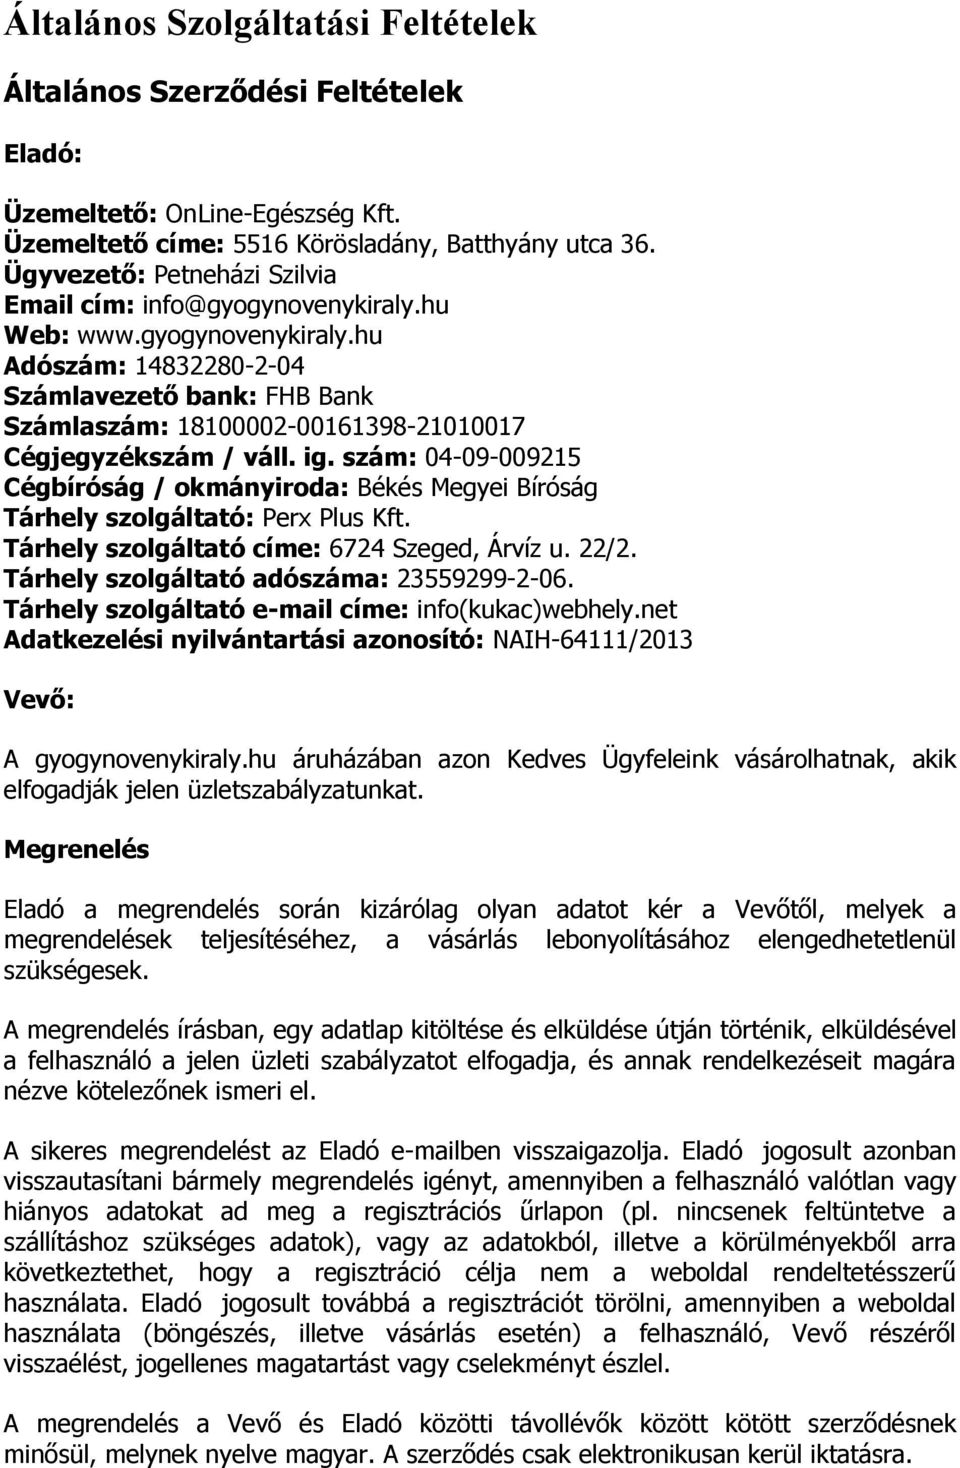 ig. szám: 04-09-009215 Cégbíróság / okmányiroda: Békés Megyei Bíróság Tárhely szolgáltató: Perx Plus Kft. Tárhely szolgáltató címe: 6724 Szeged, Árvíz u. 22/2.